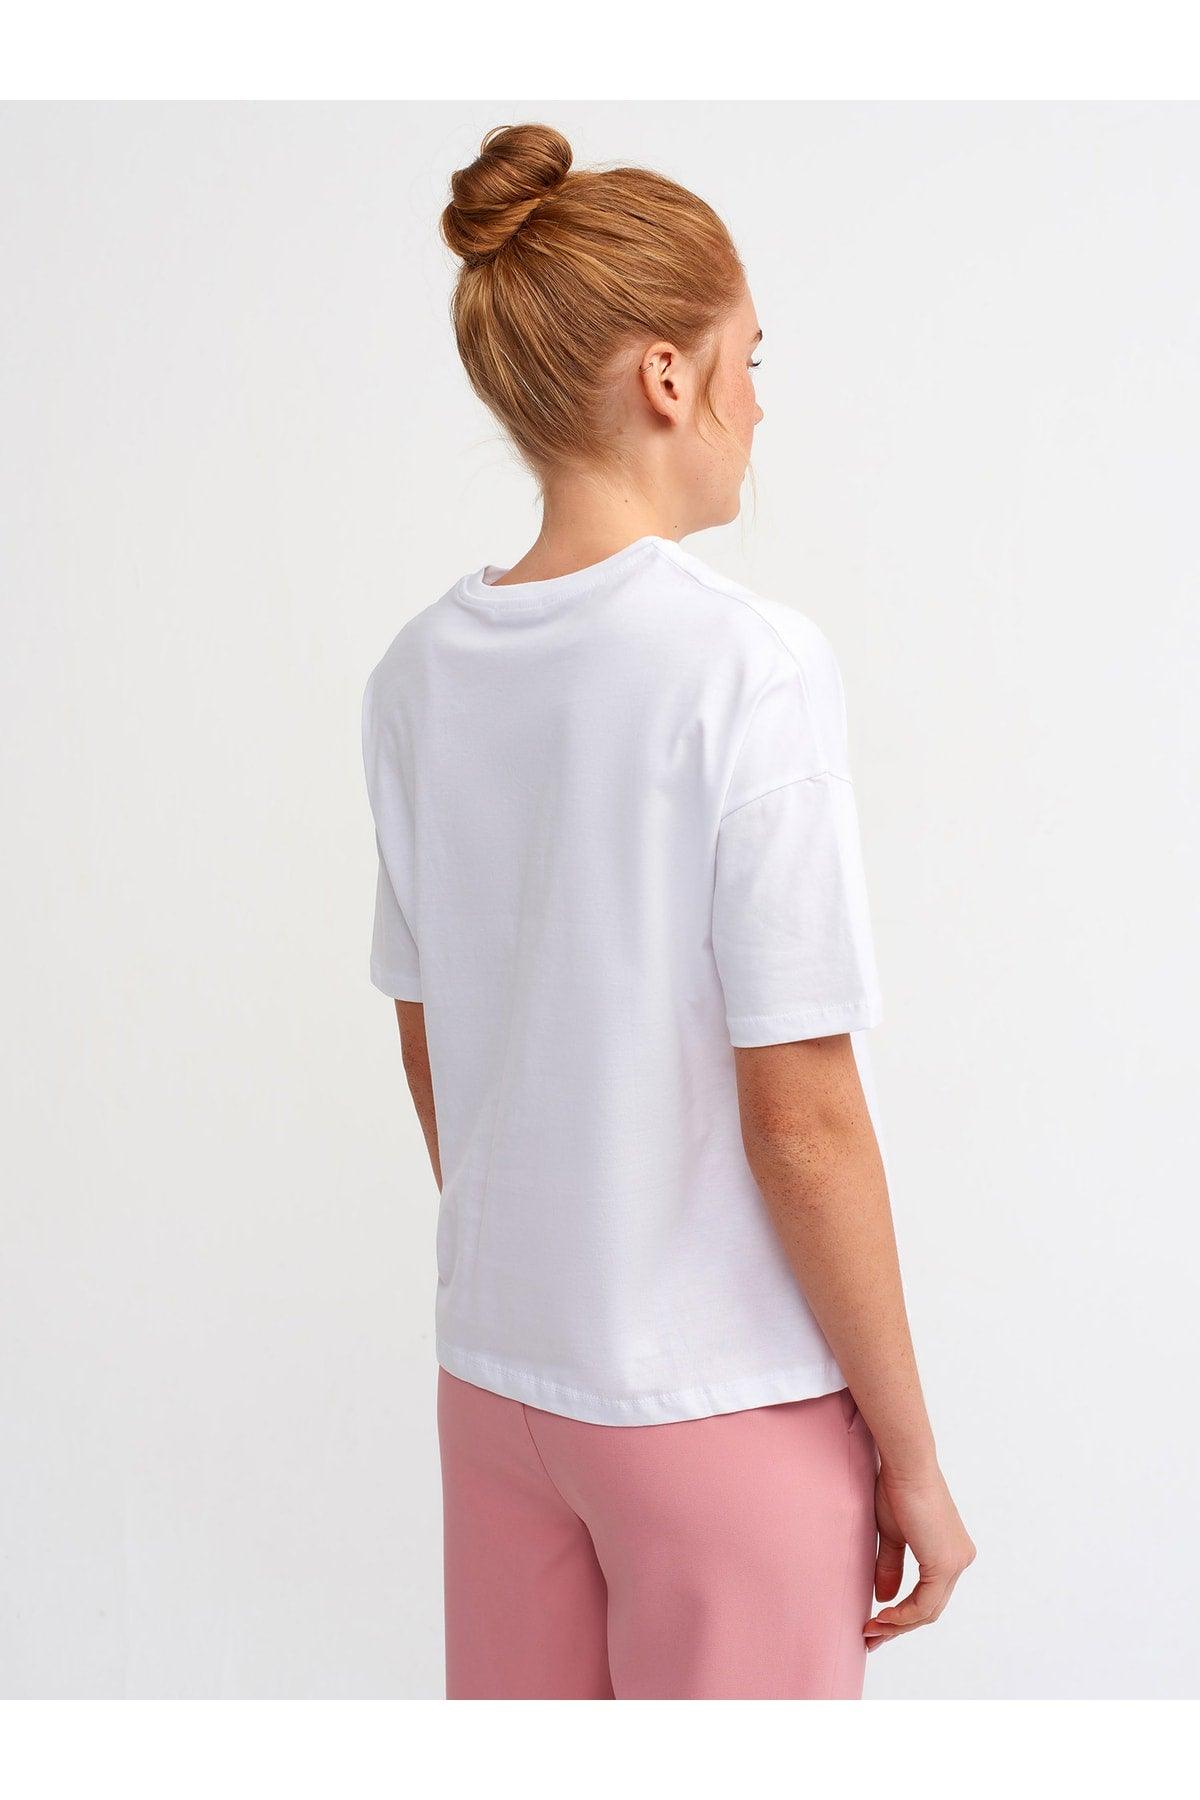 Women's White Basic T-shirt 3683 - Swordslife